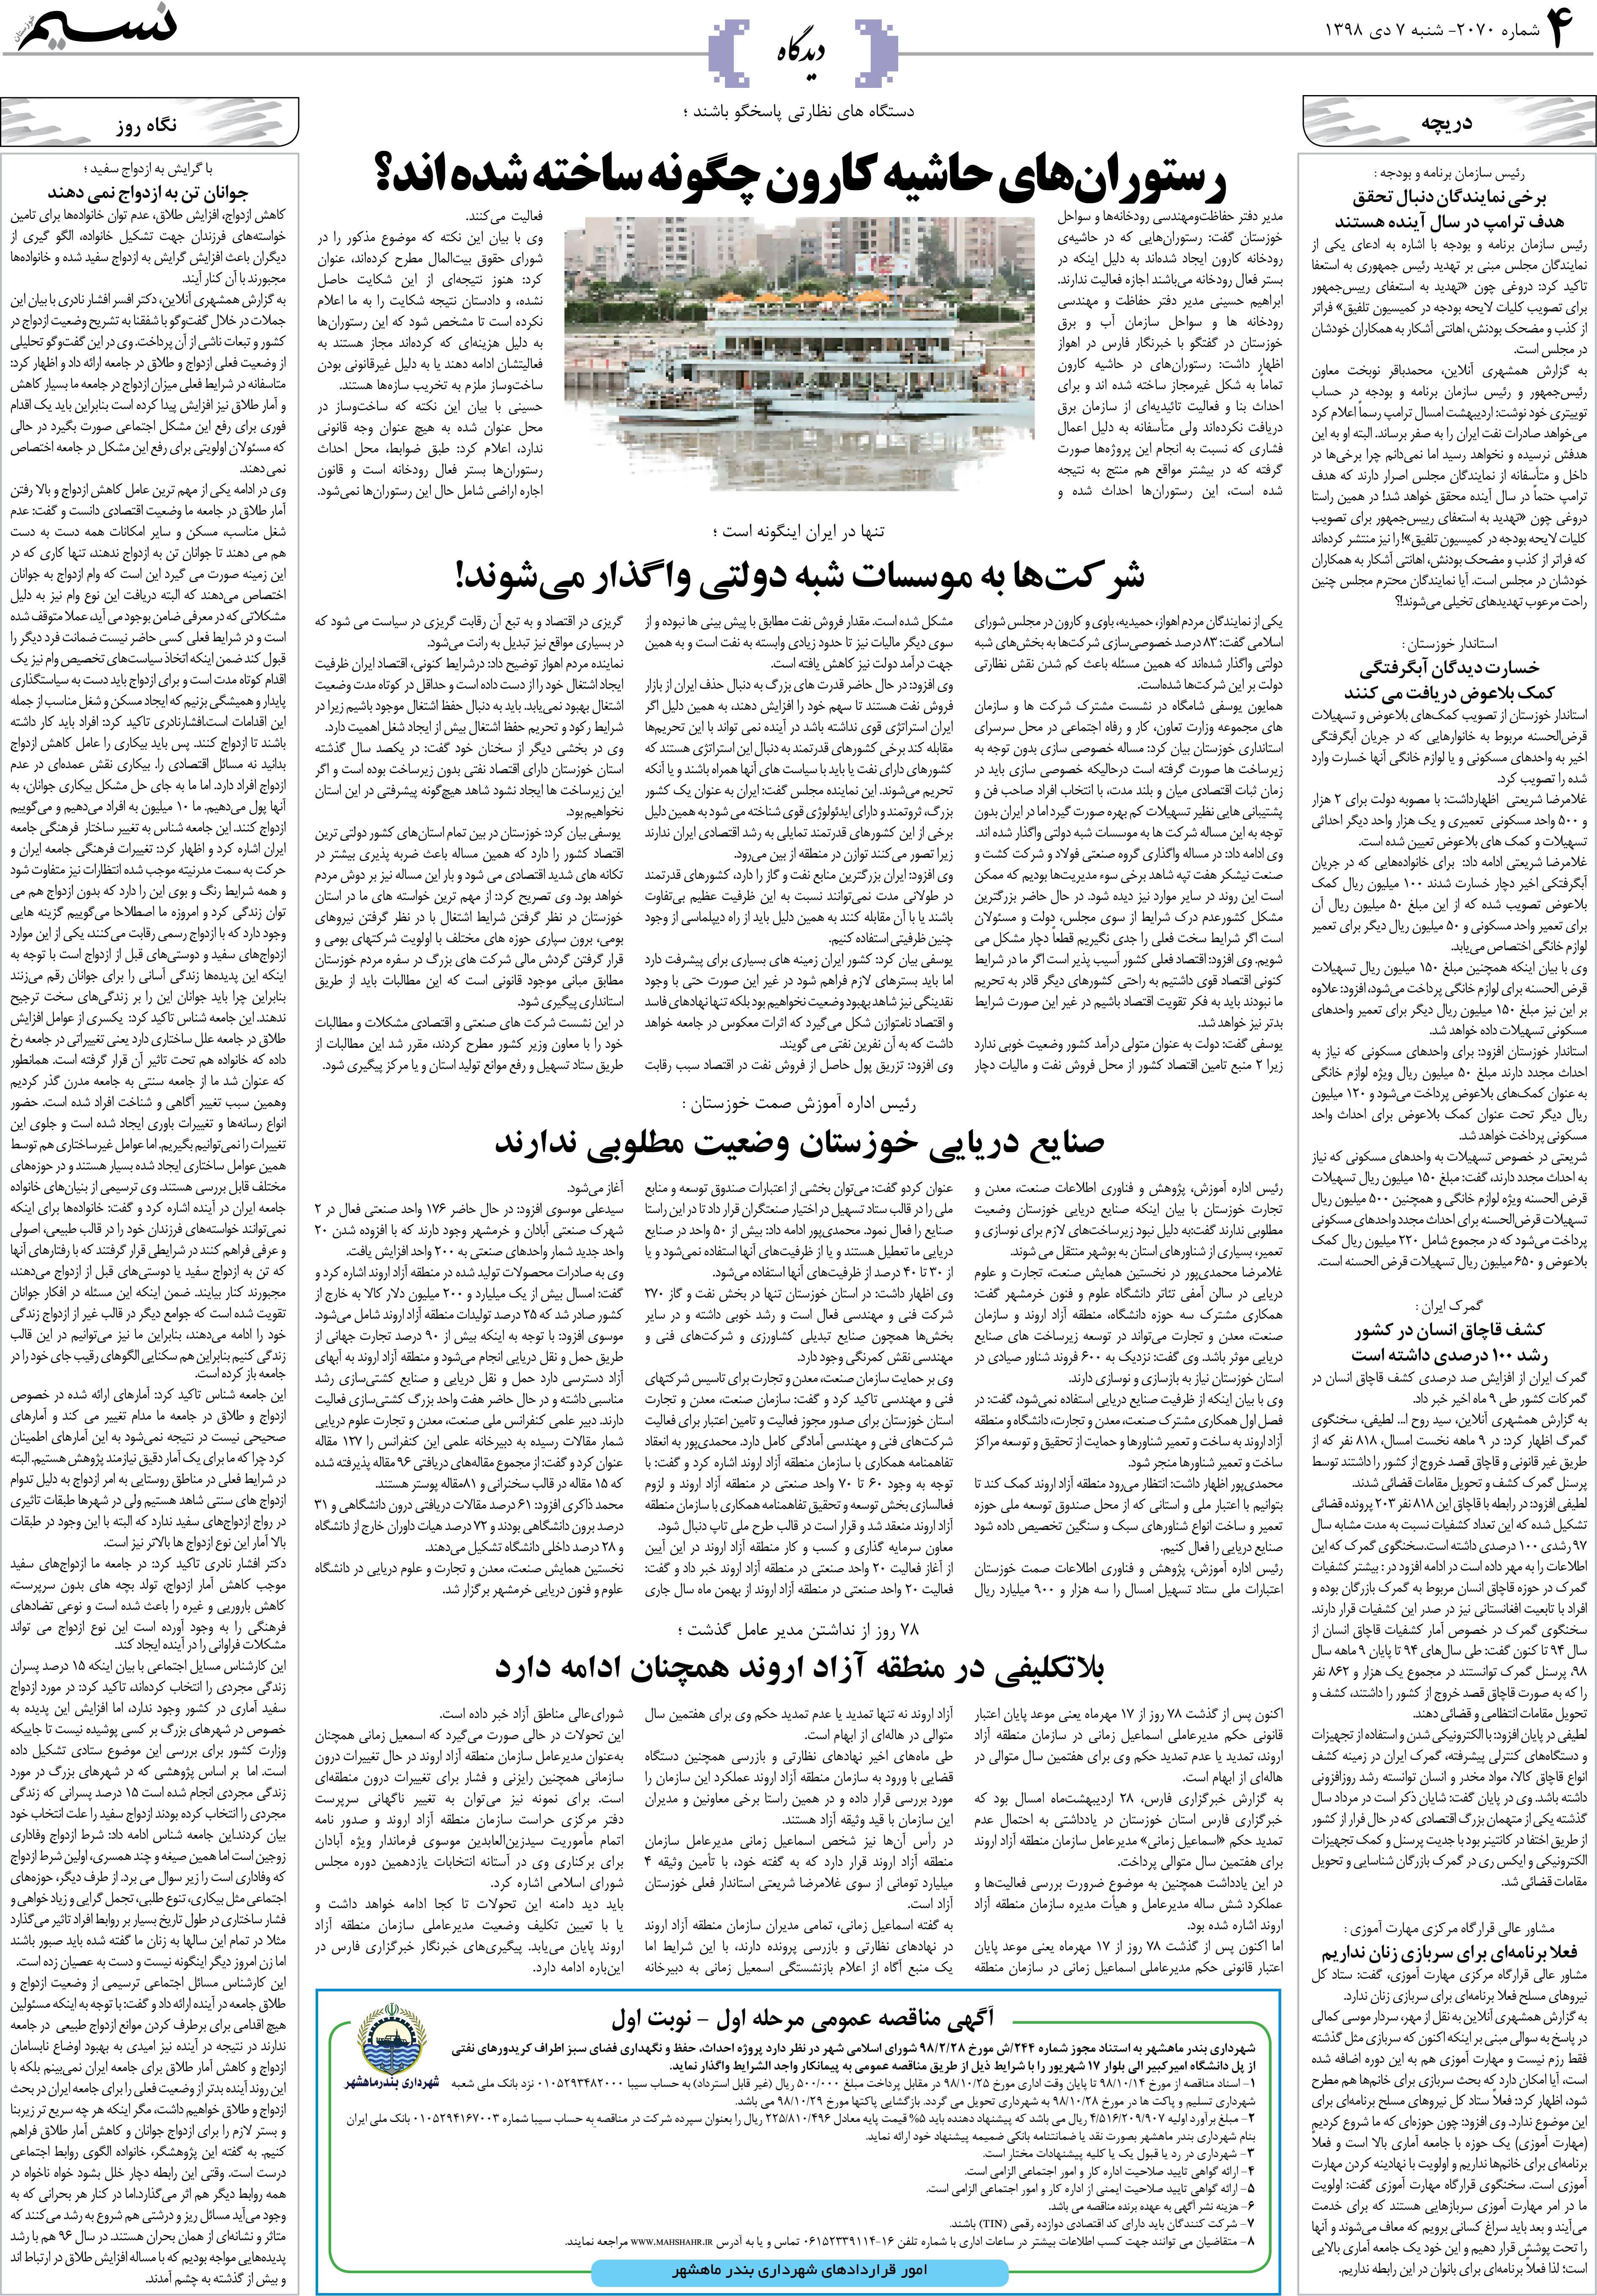 صفحه دیدگاه روزنامه نسیم شماره 2070